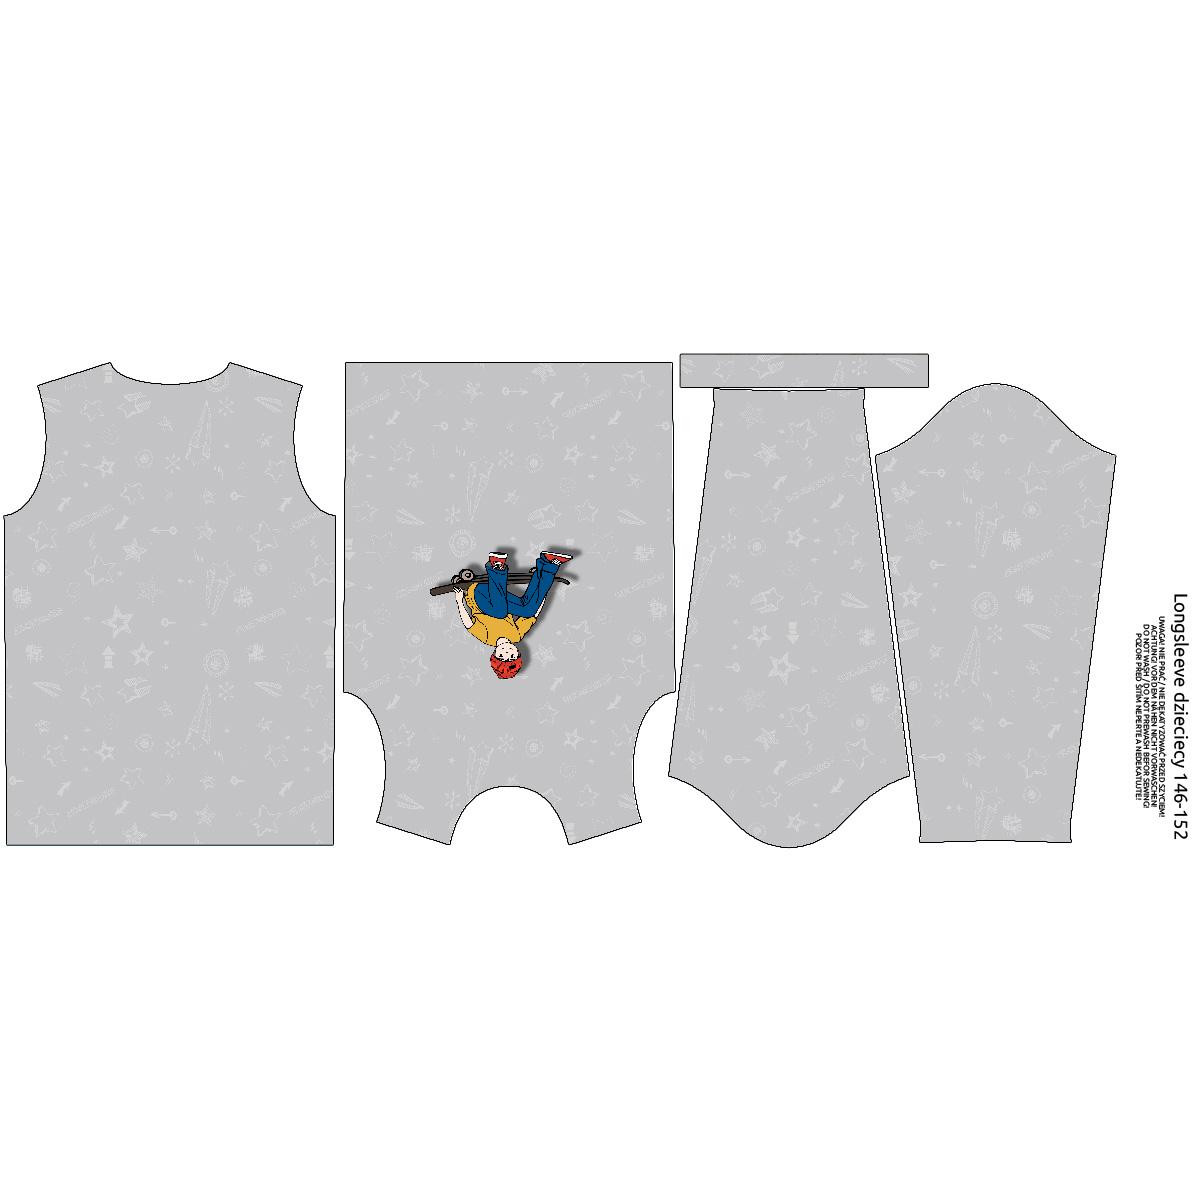 LONGSLEEVE - NOEL (SKATER) / grey - single jersey